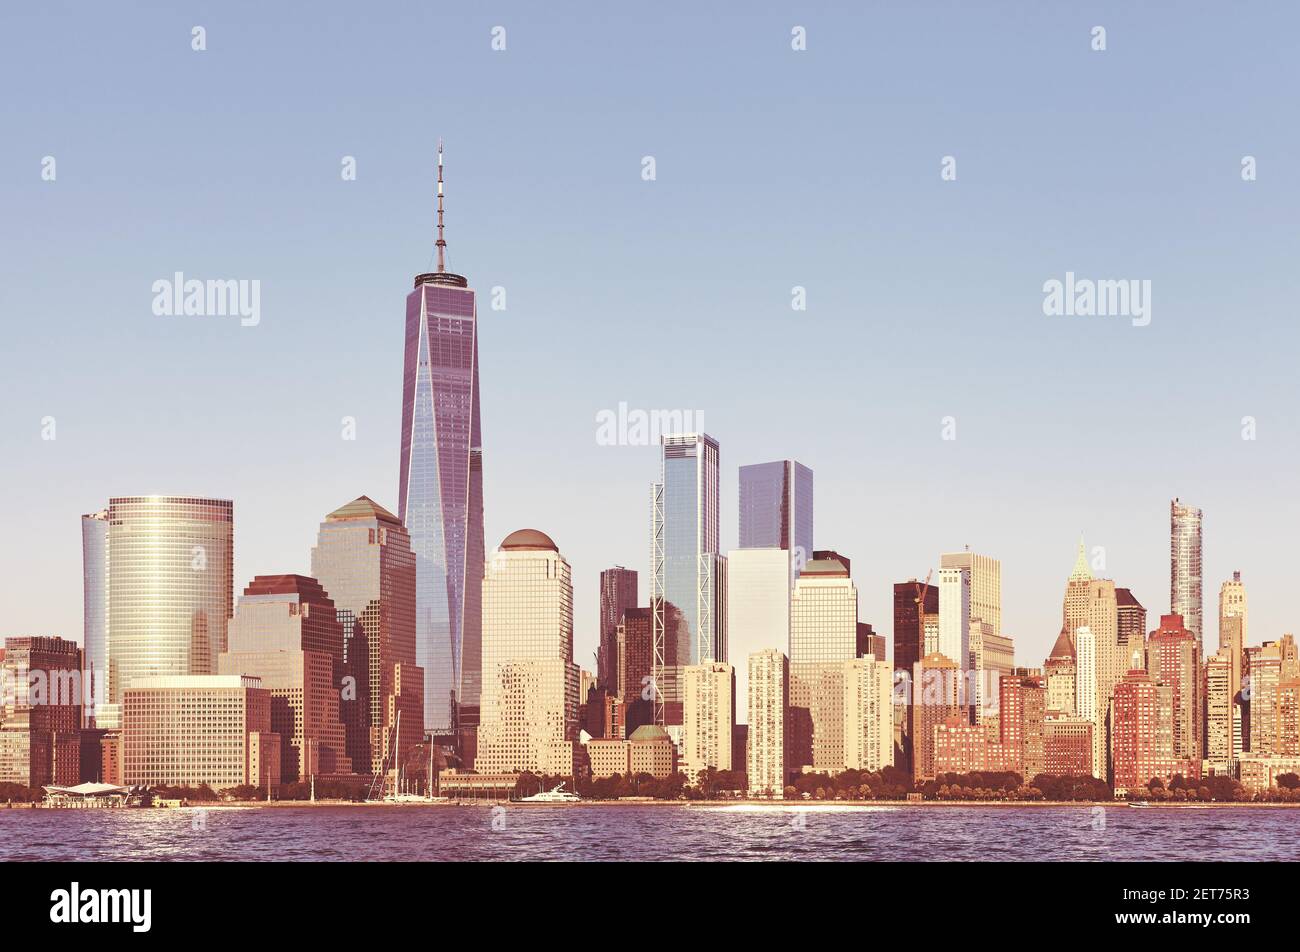 Panorama del distrito de negocios de Manhattan al atardecer, imagen en tonos de color, Ciudad de Nueva York, EE.UU. Foto de stock